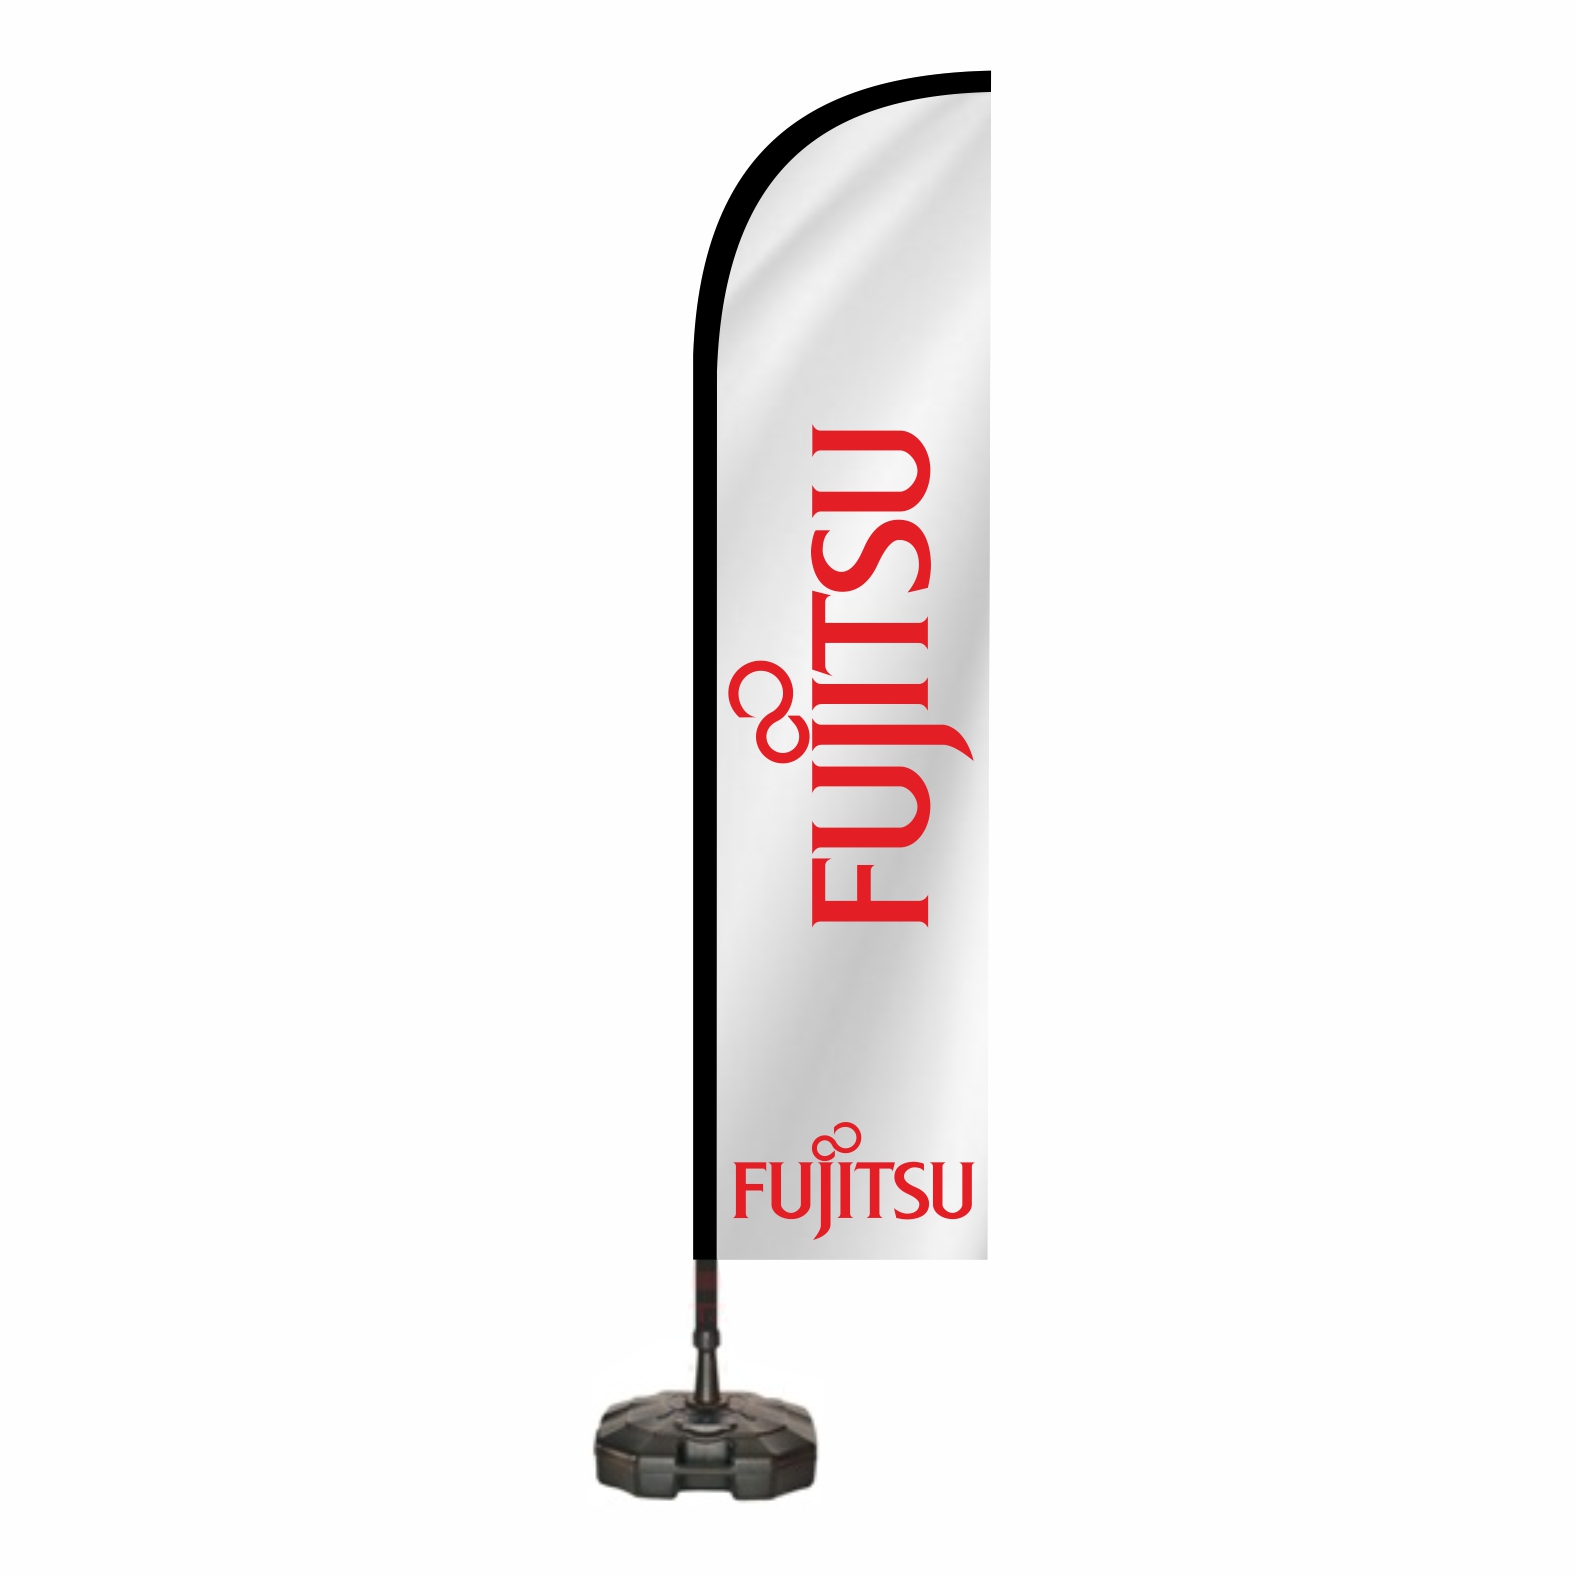 Fujitsu Oltal Bayra Ebatlar